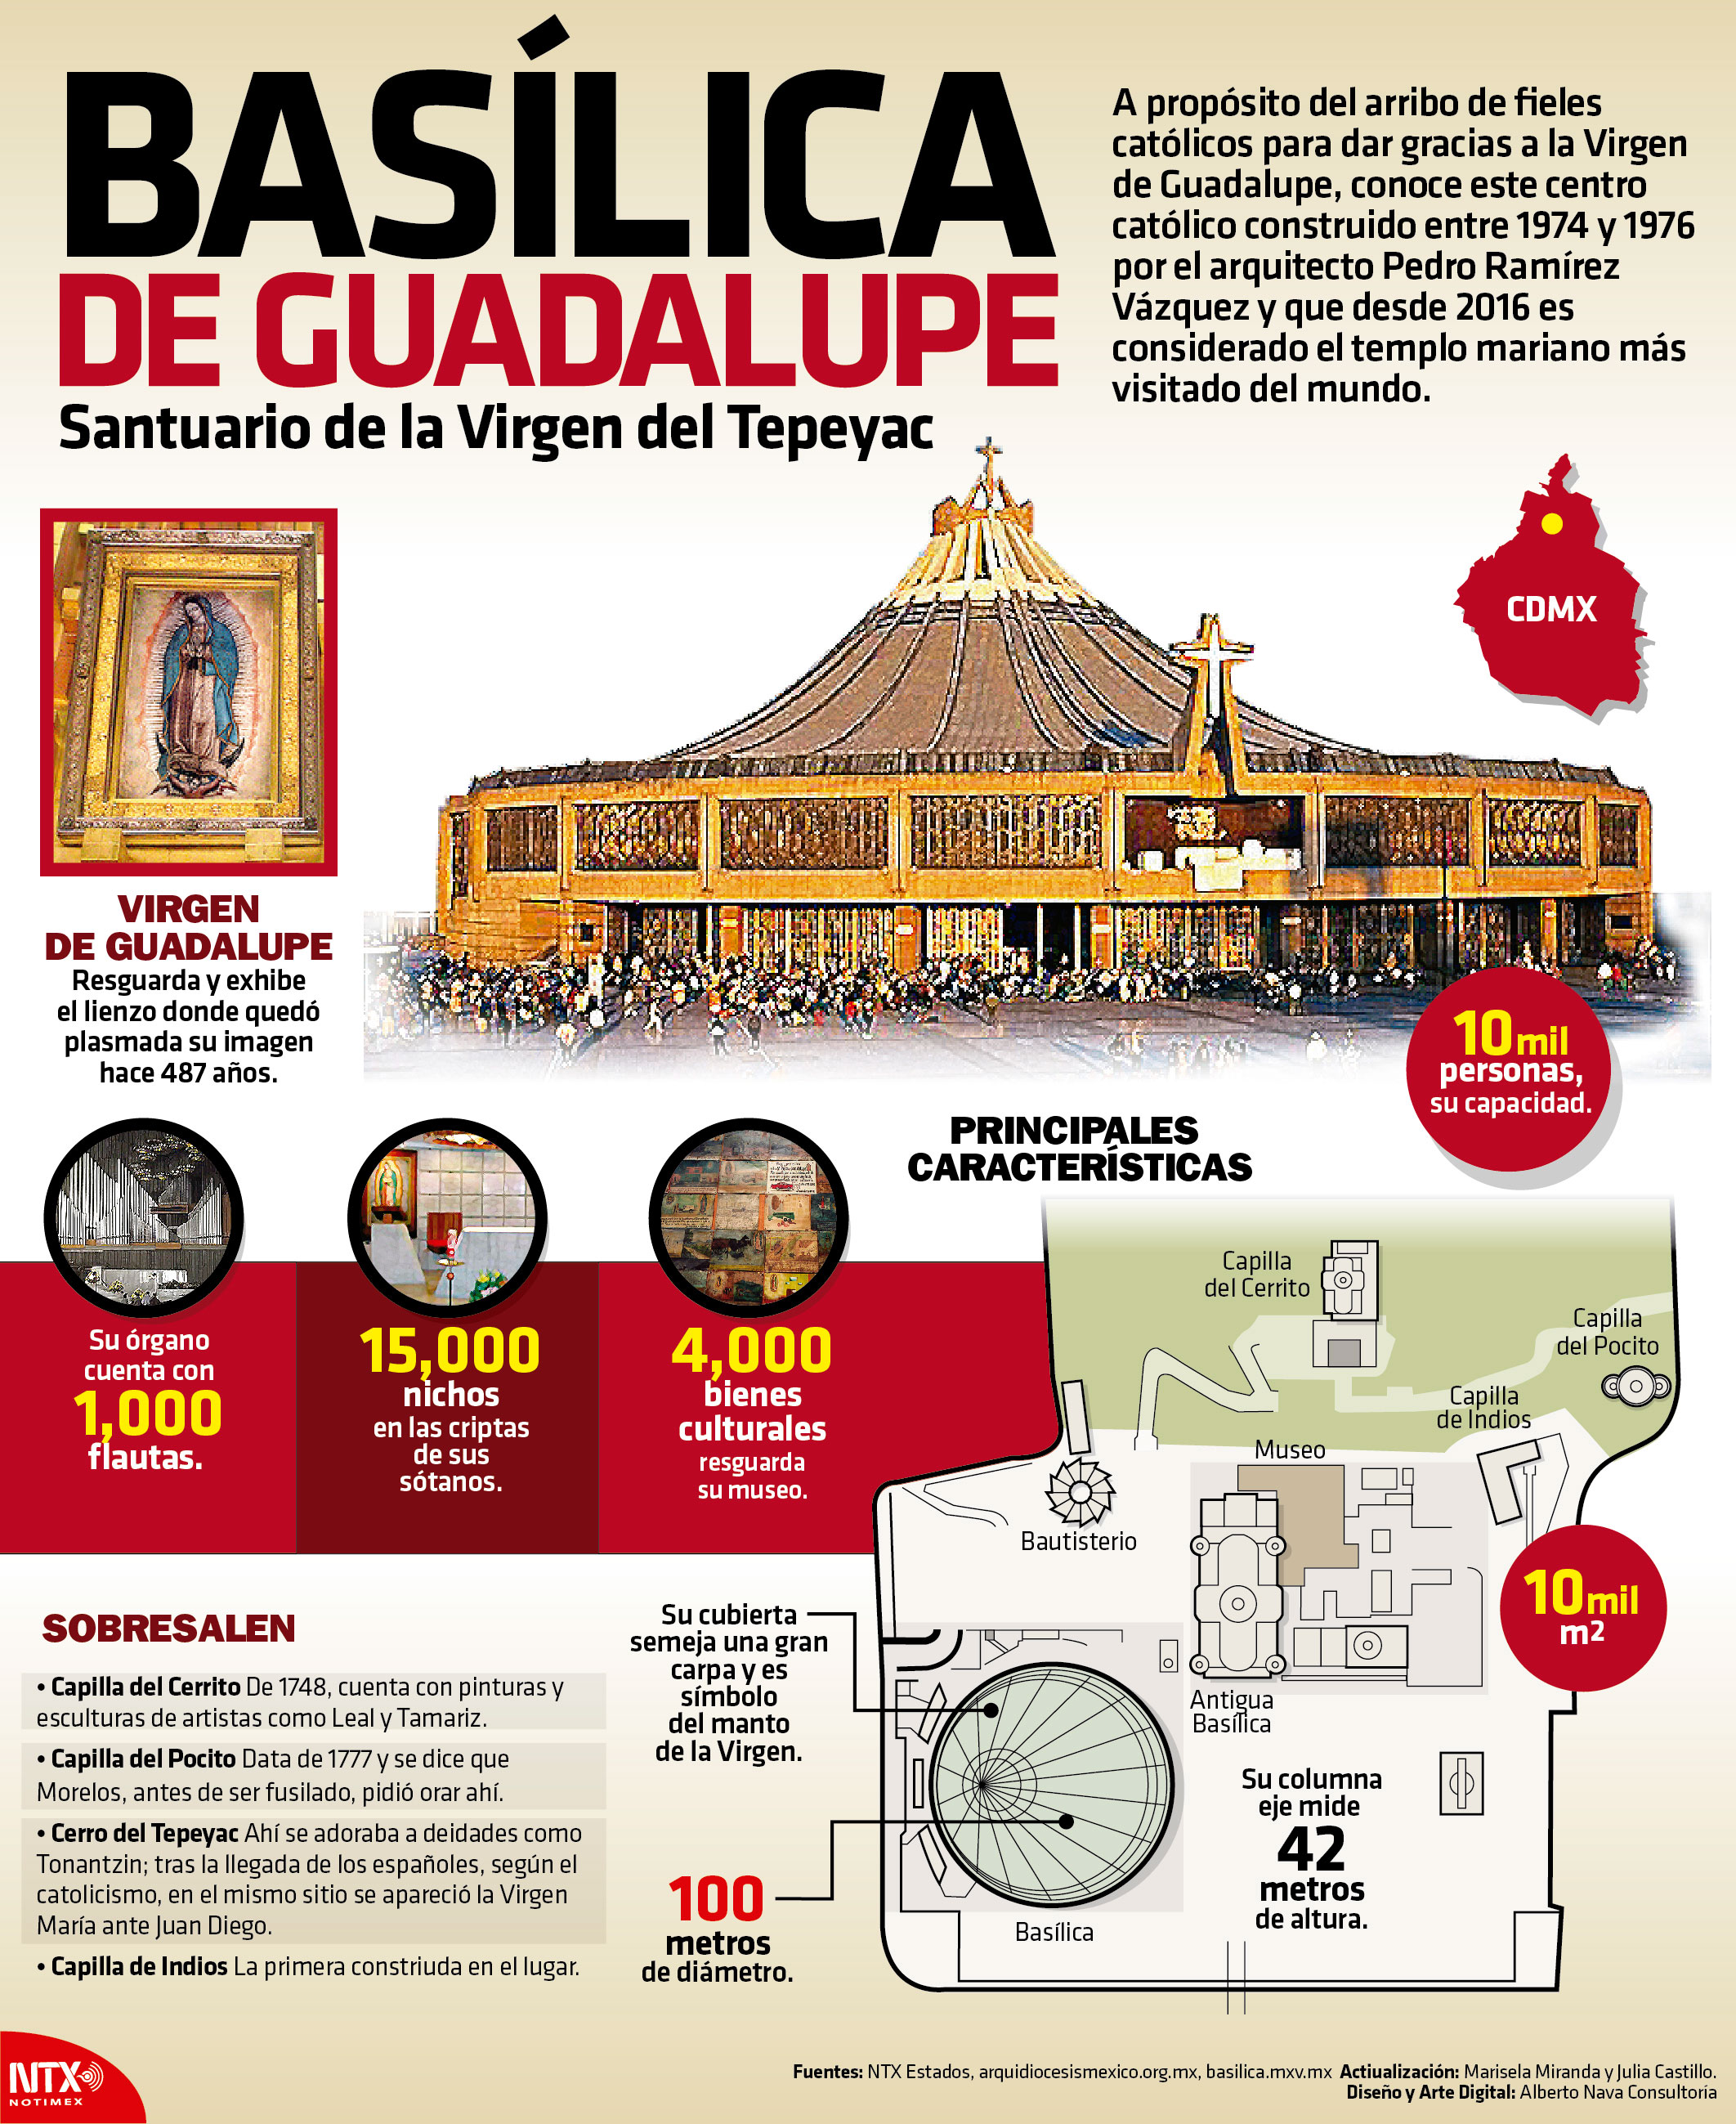 Baslica de Guadalupe, santuario de la Virgen del Tepeyac